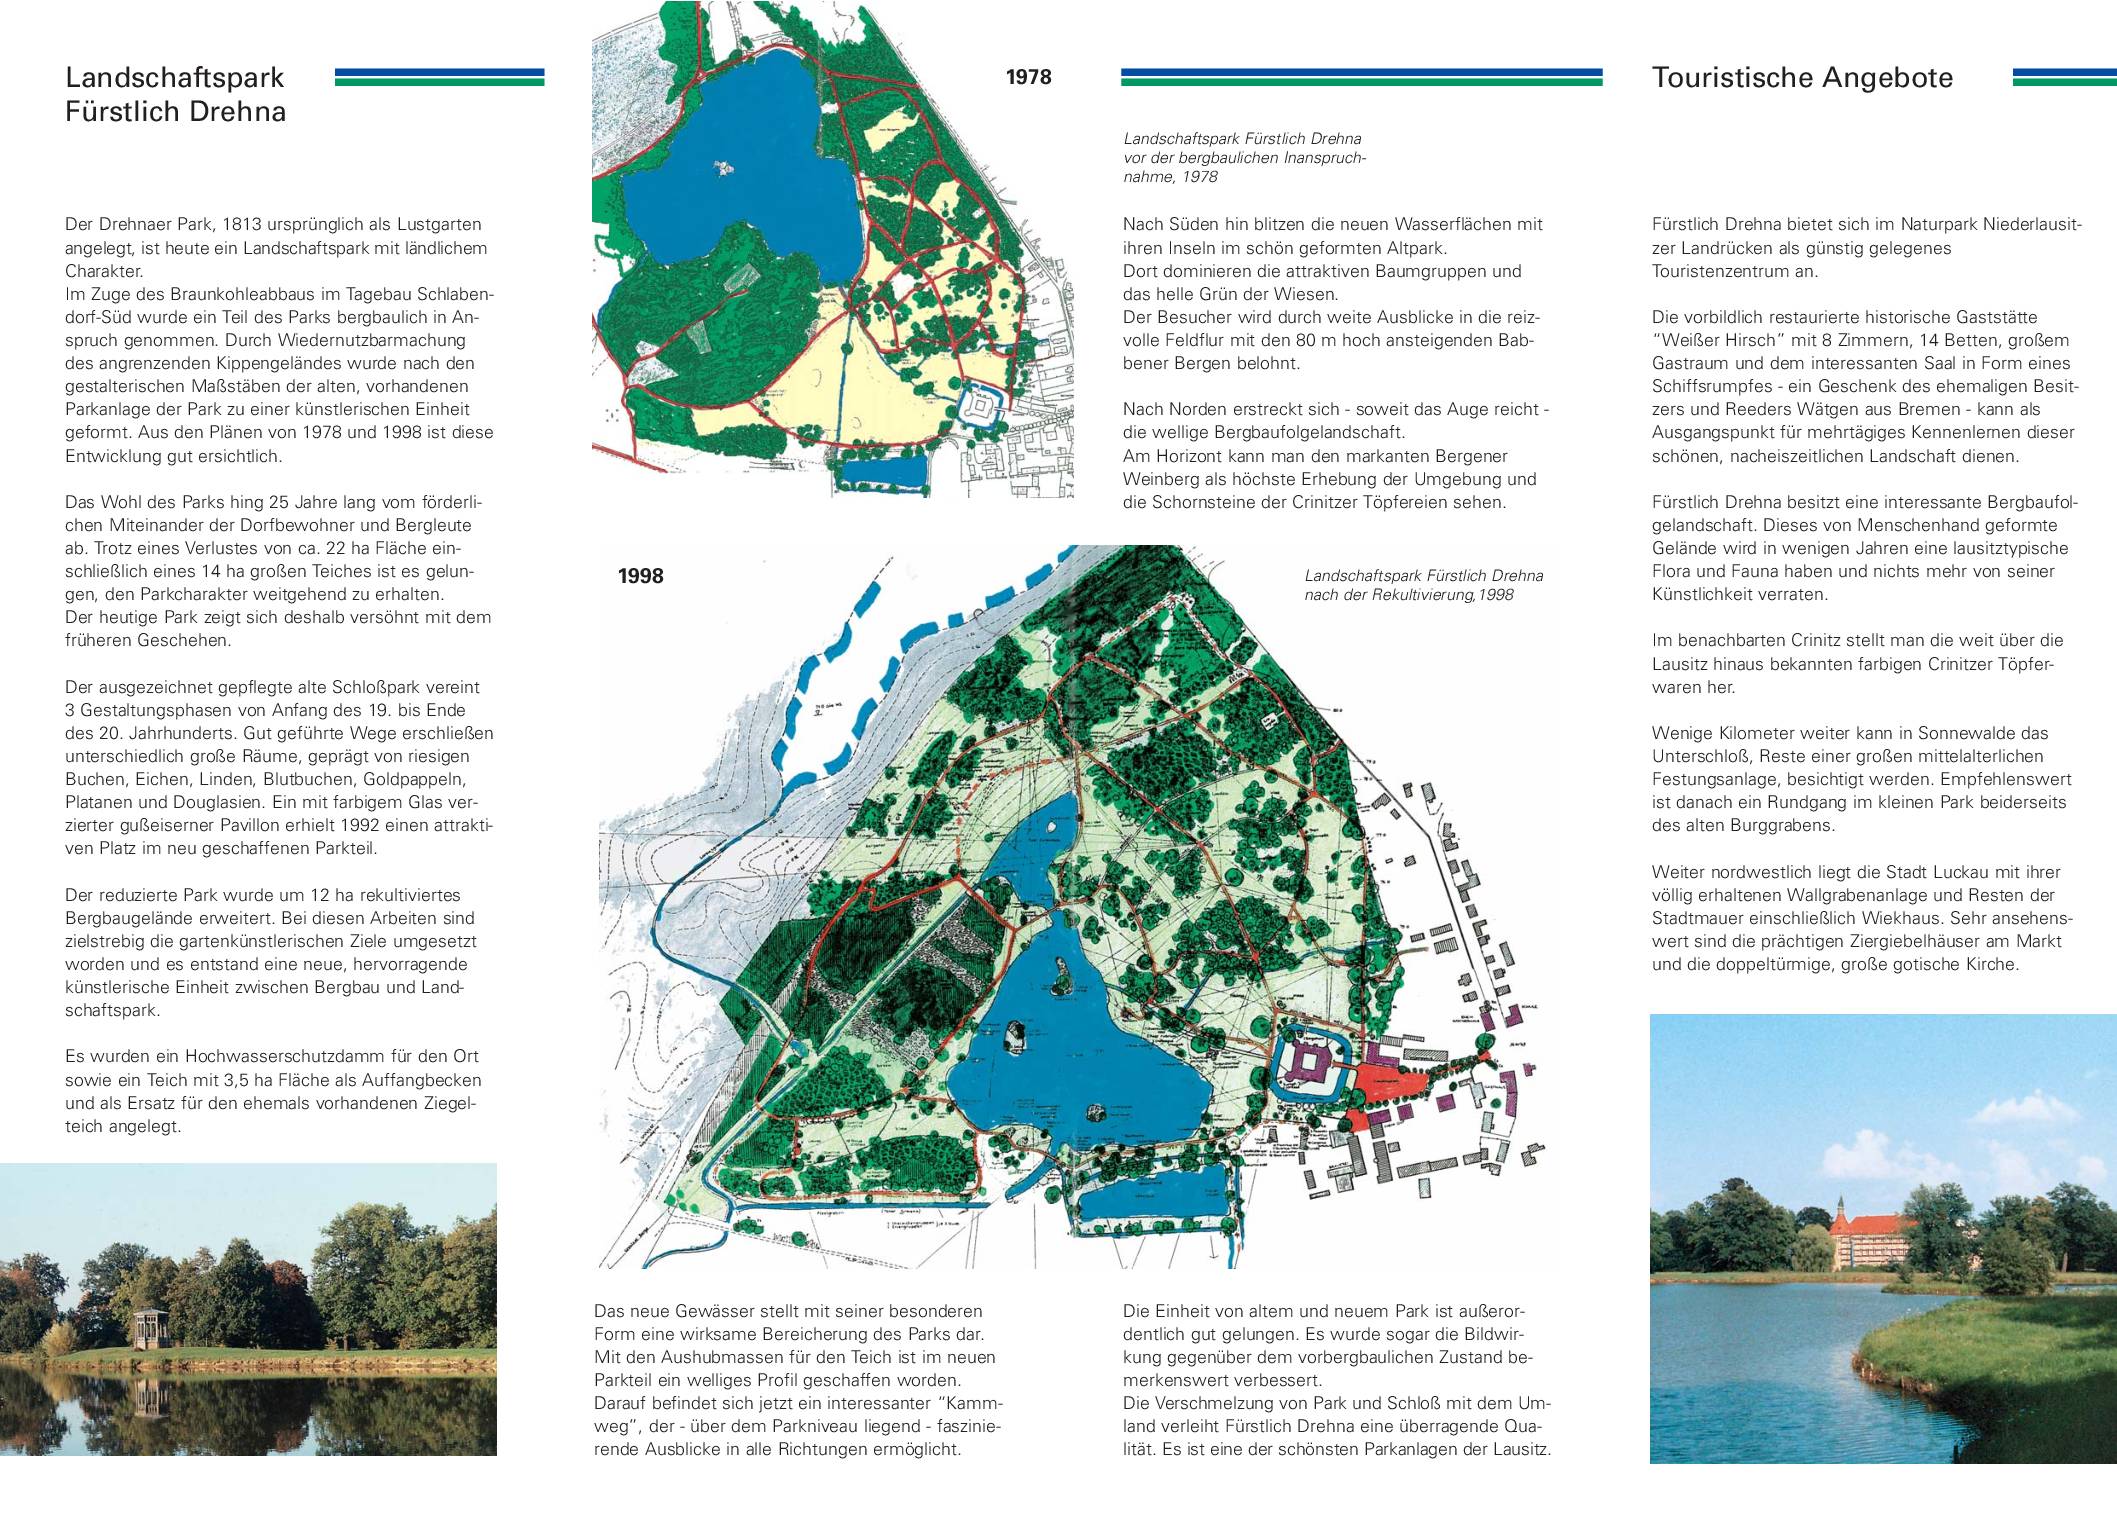 Landschaftspark FuerstlichDrehna pdf